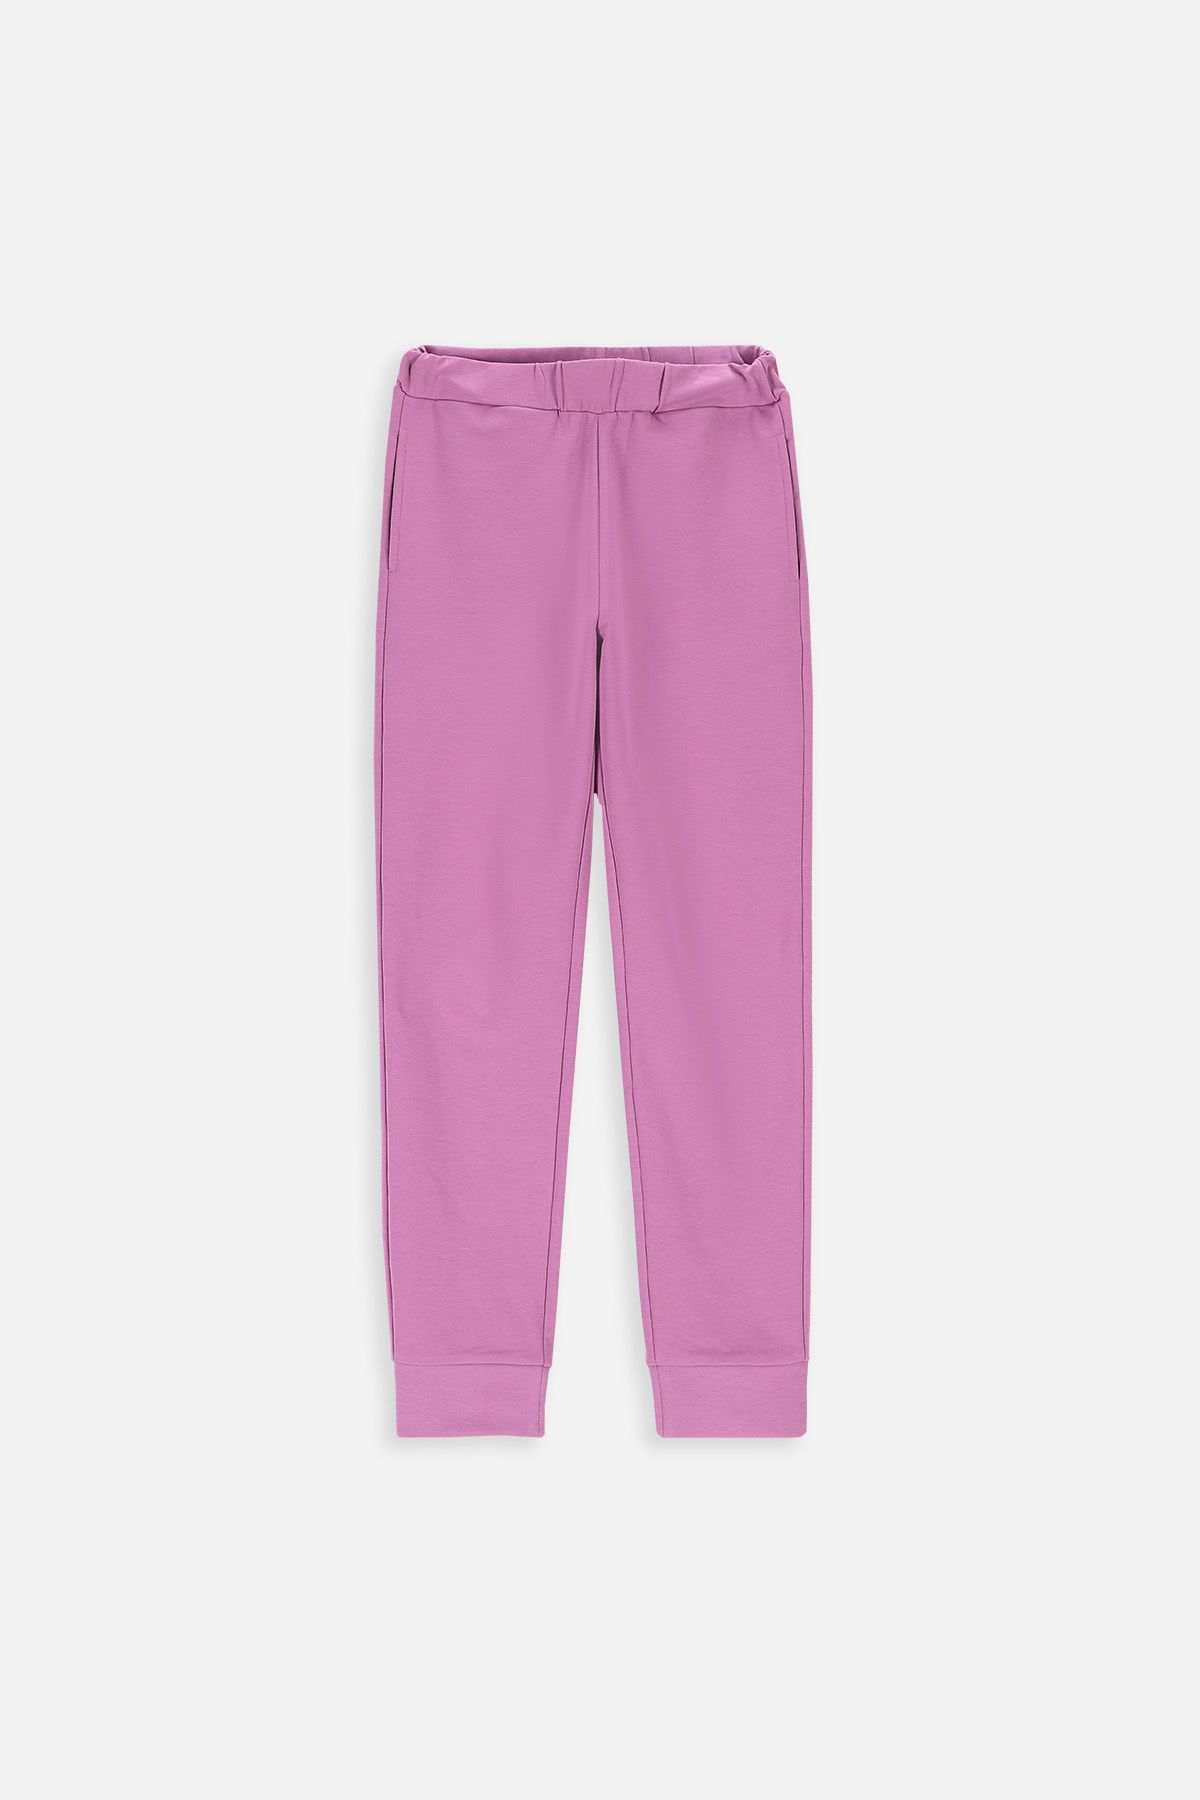 Spodnie dresowe fioletowe z kieszeniami 2219476